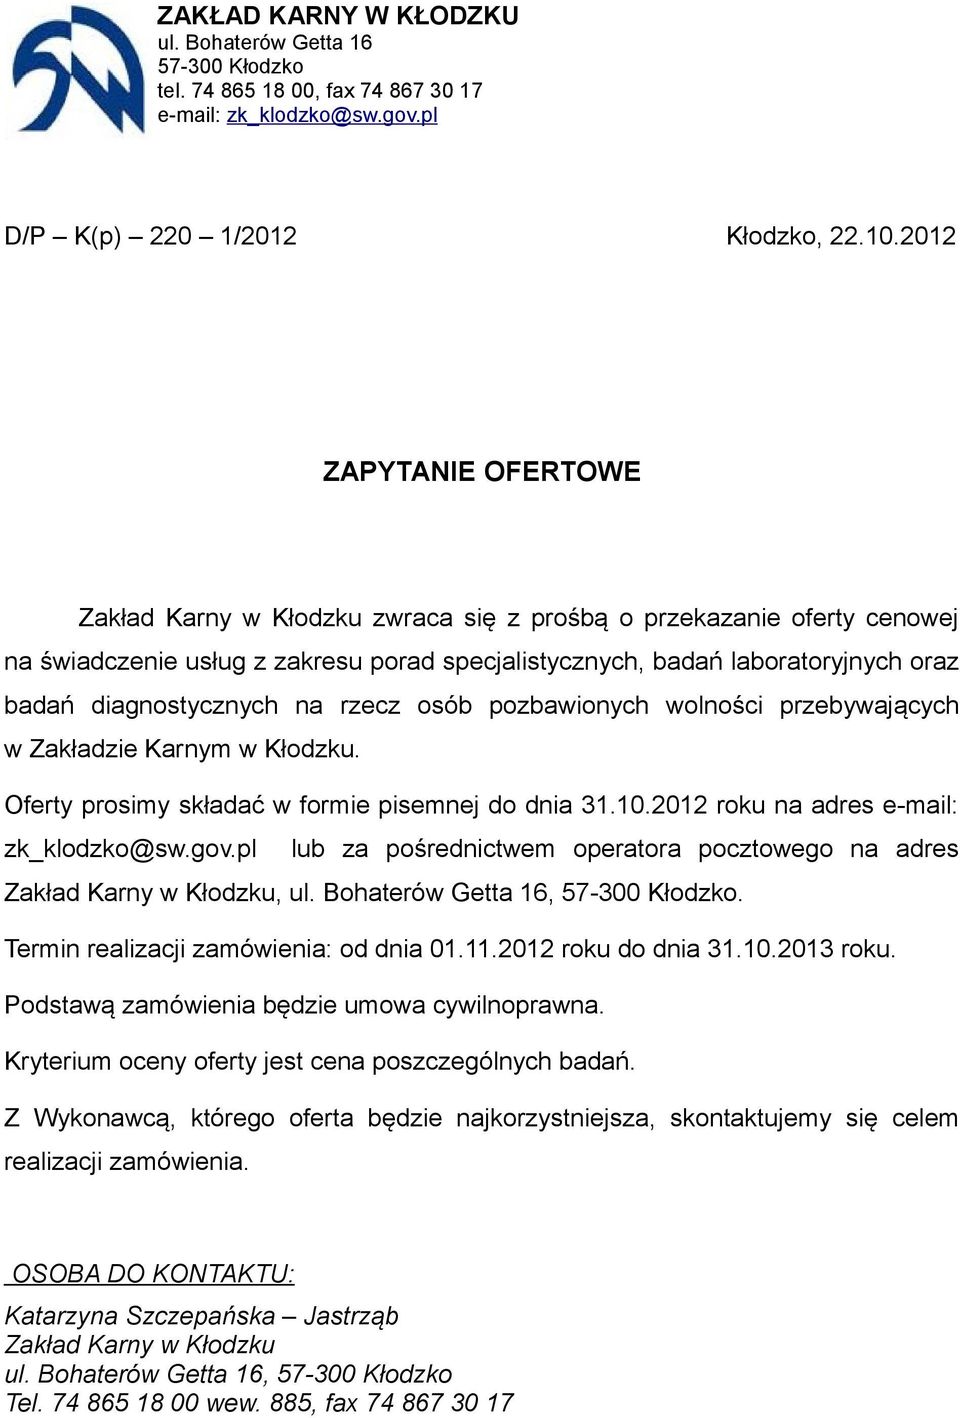 diagnostycznych na rzecz osób pozbawionych wolności przebywających w Zakładzie Karnym w Kłodzku. Oferty prosimy składać w formie pisemnej do dnia 31.10.2012 roku na adres e-mail: zk_klodzko@sw.gov.